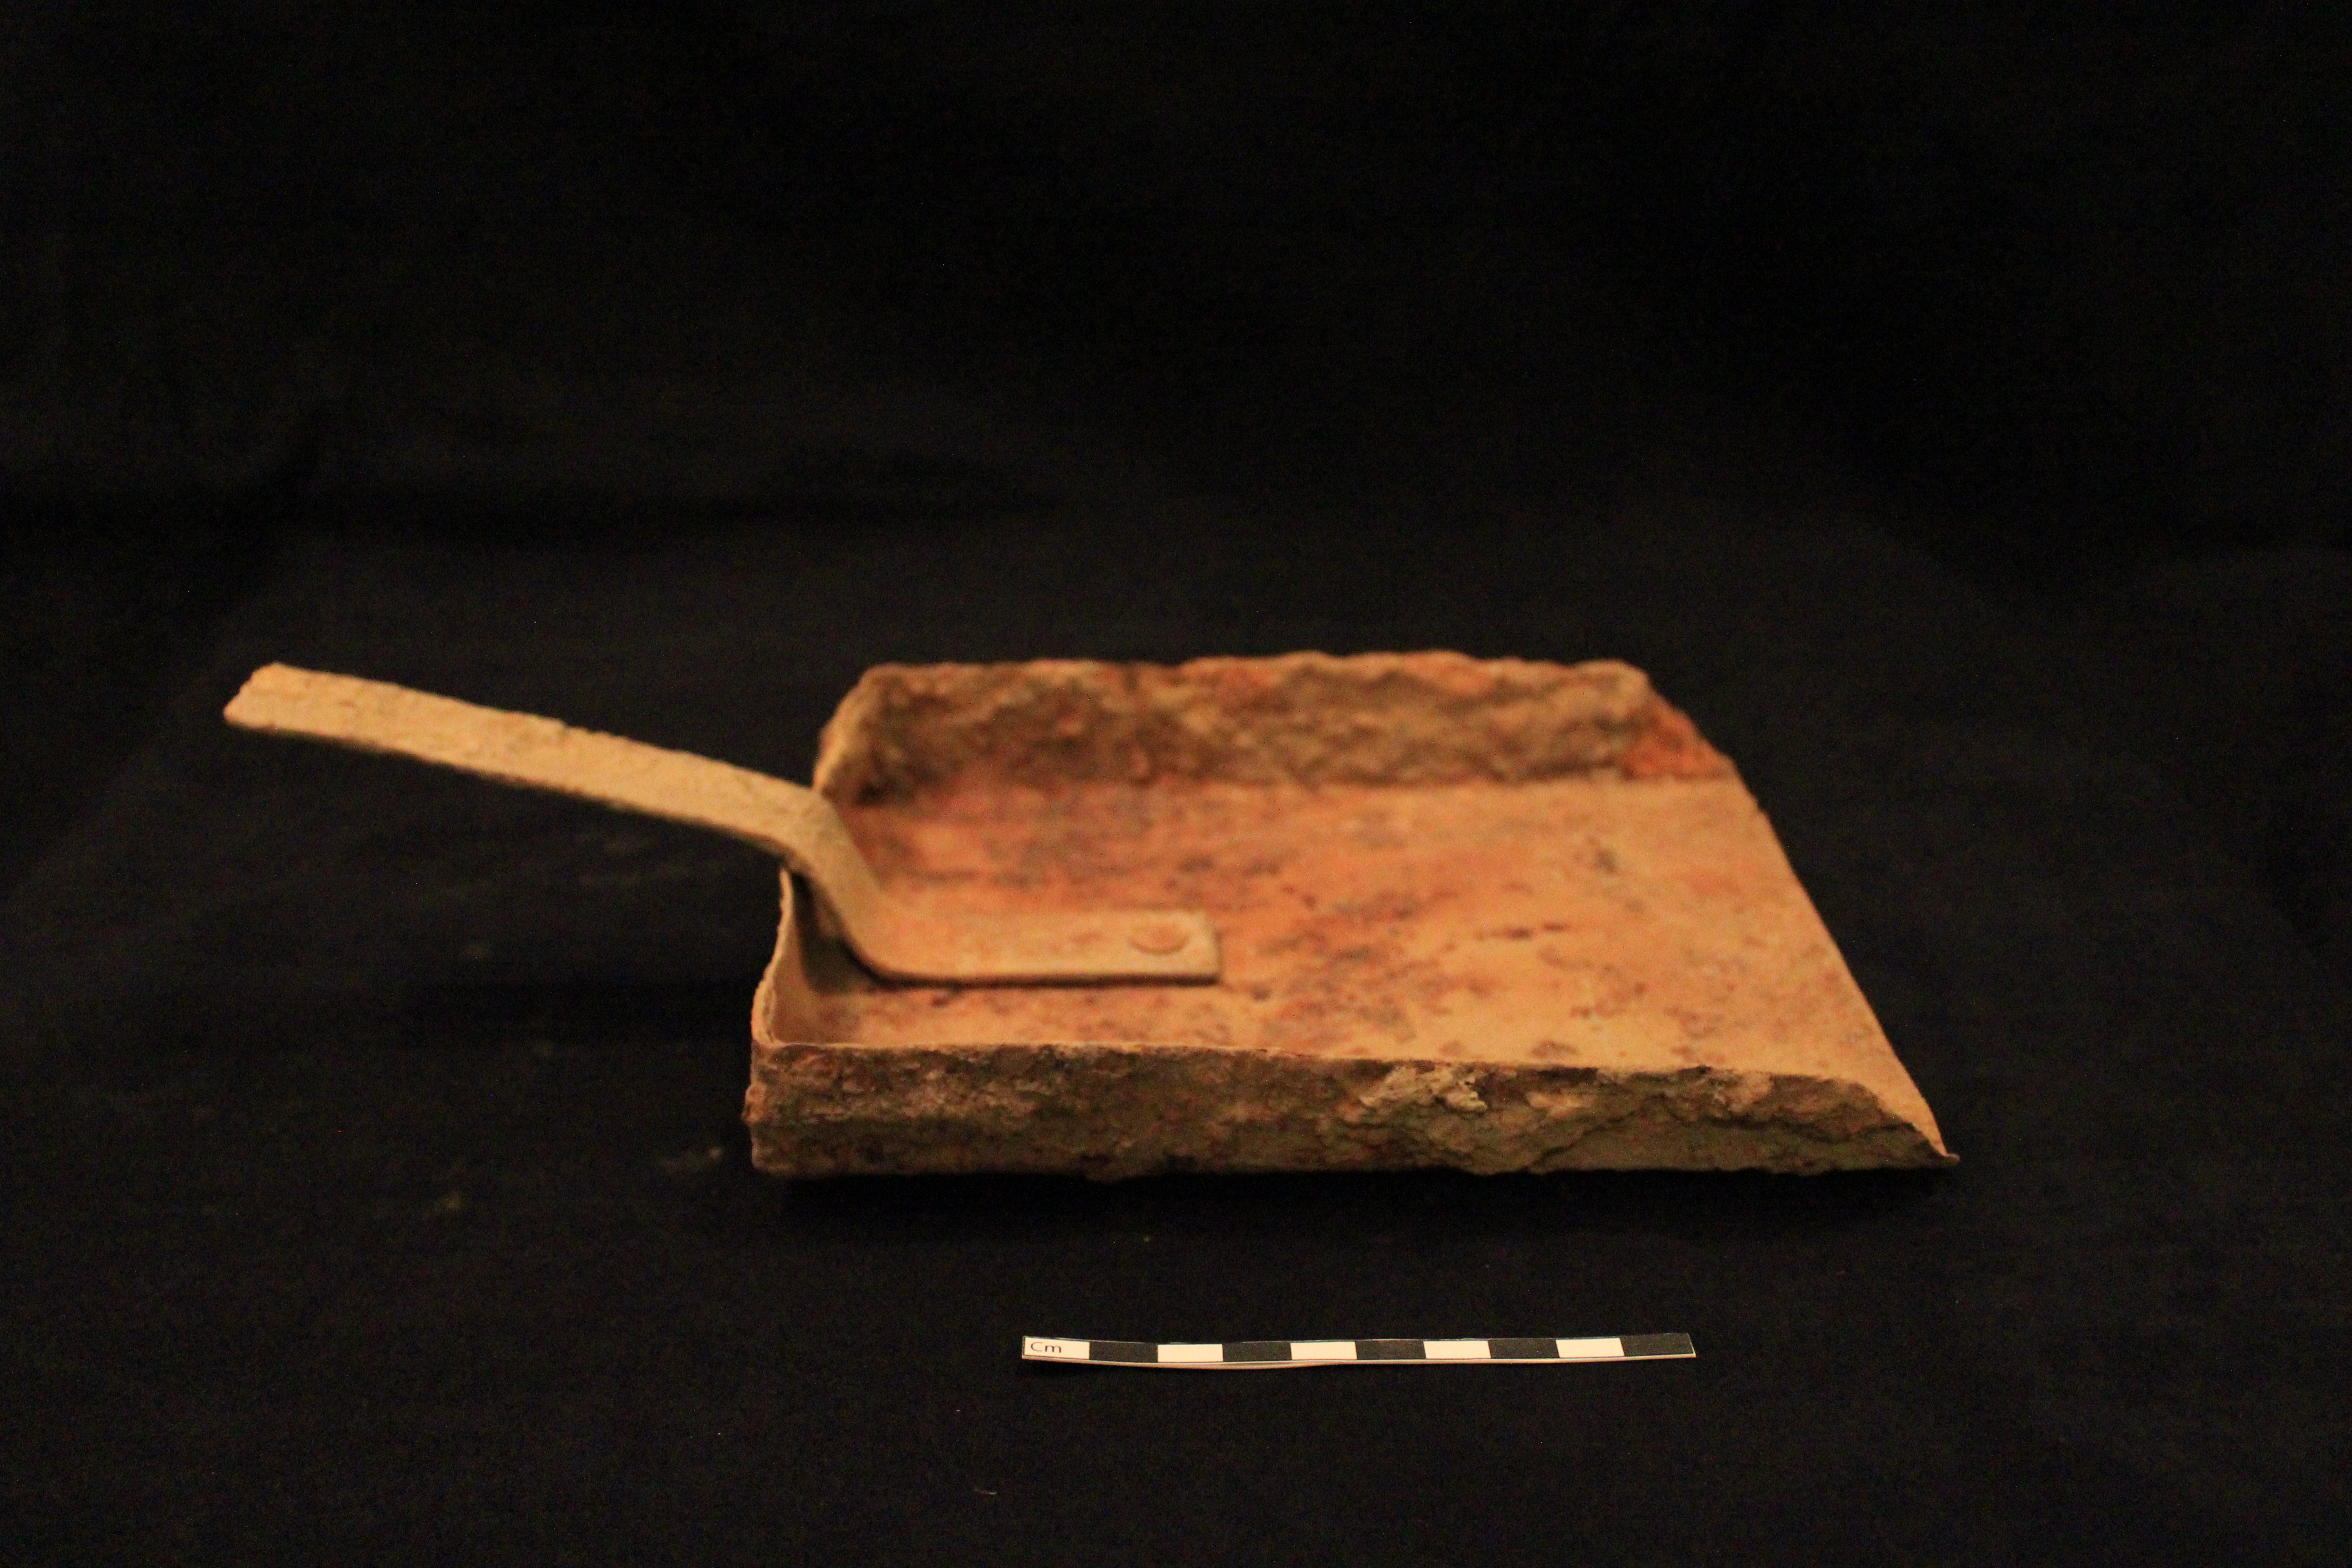 Une pelle en fer faite à la main.//A shovel made by hand of metal